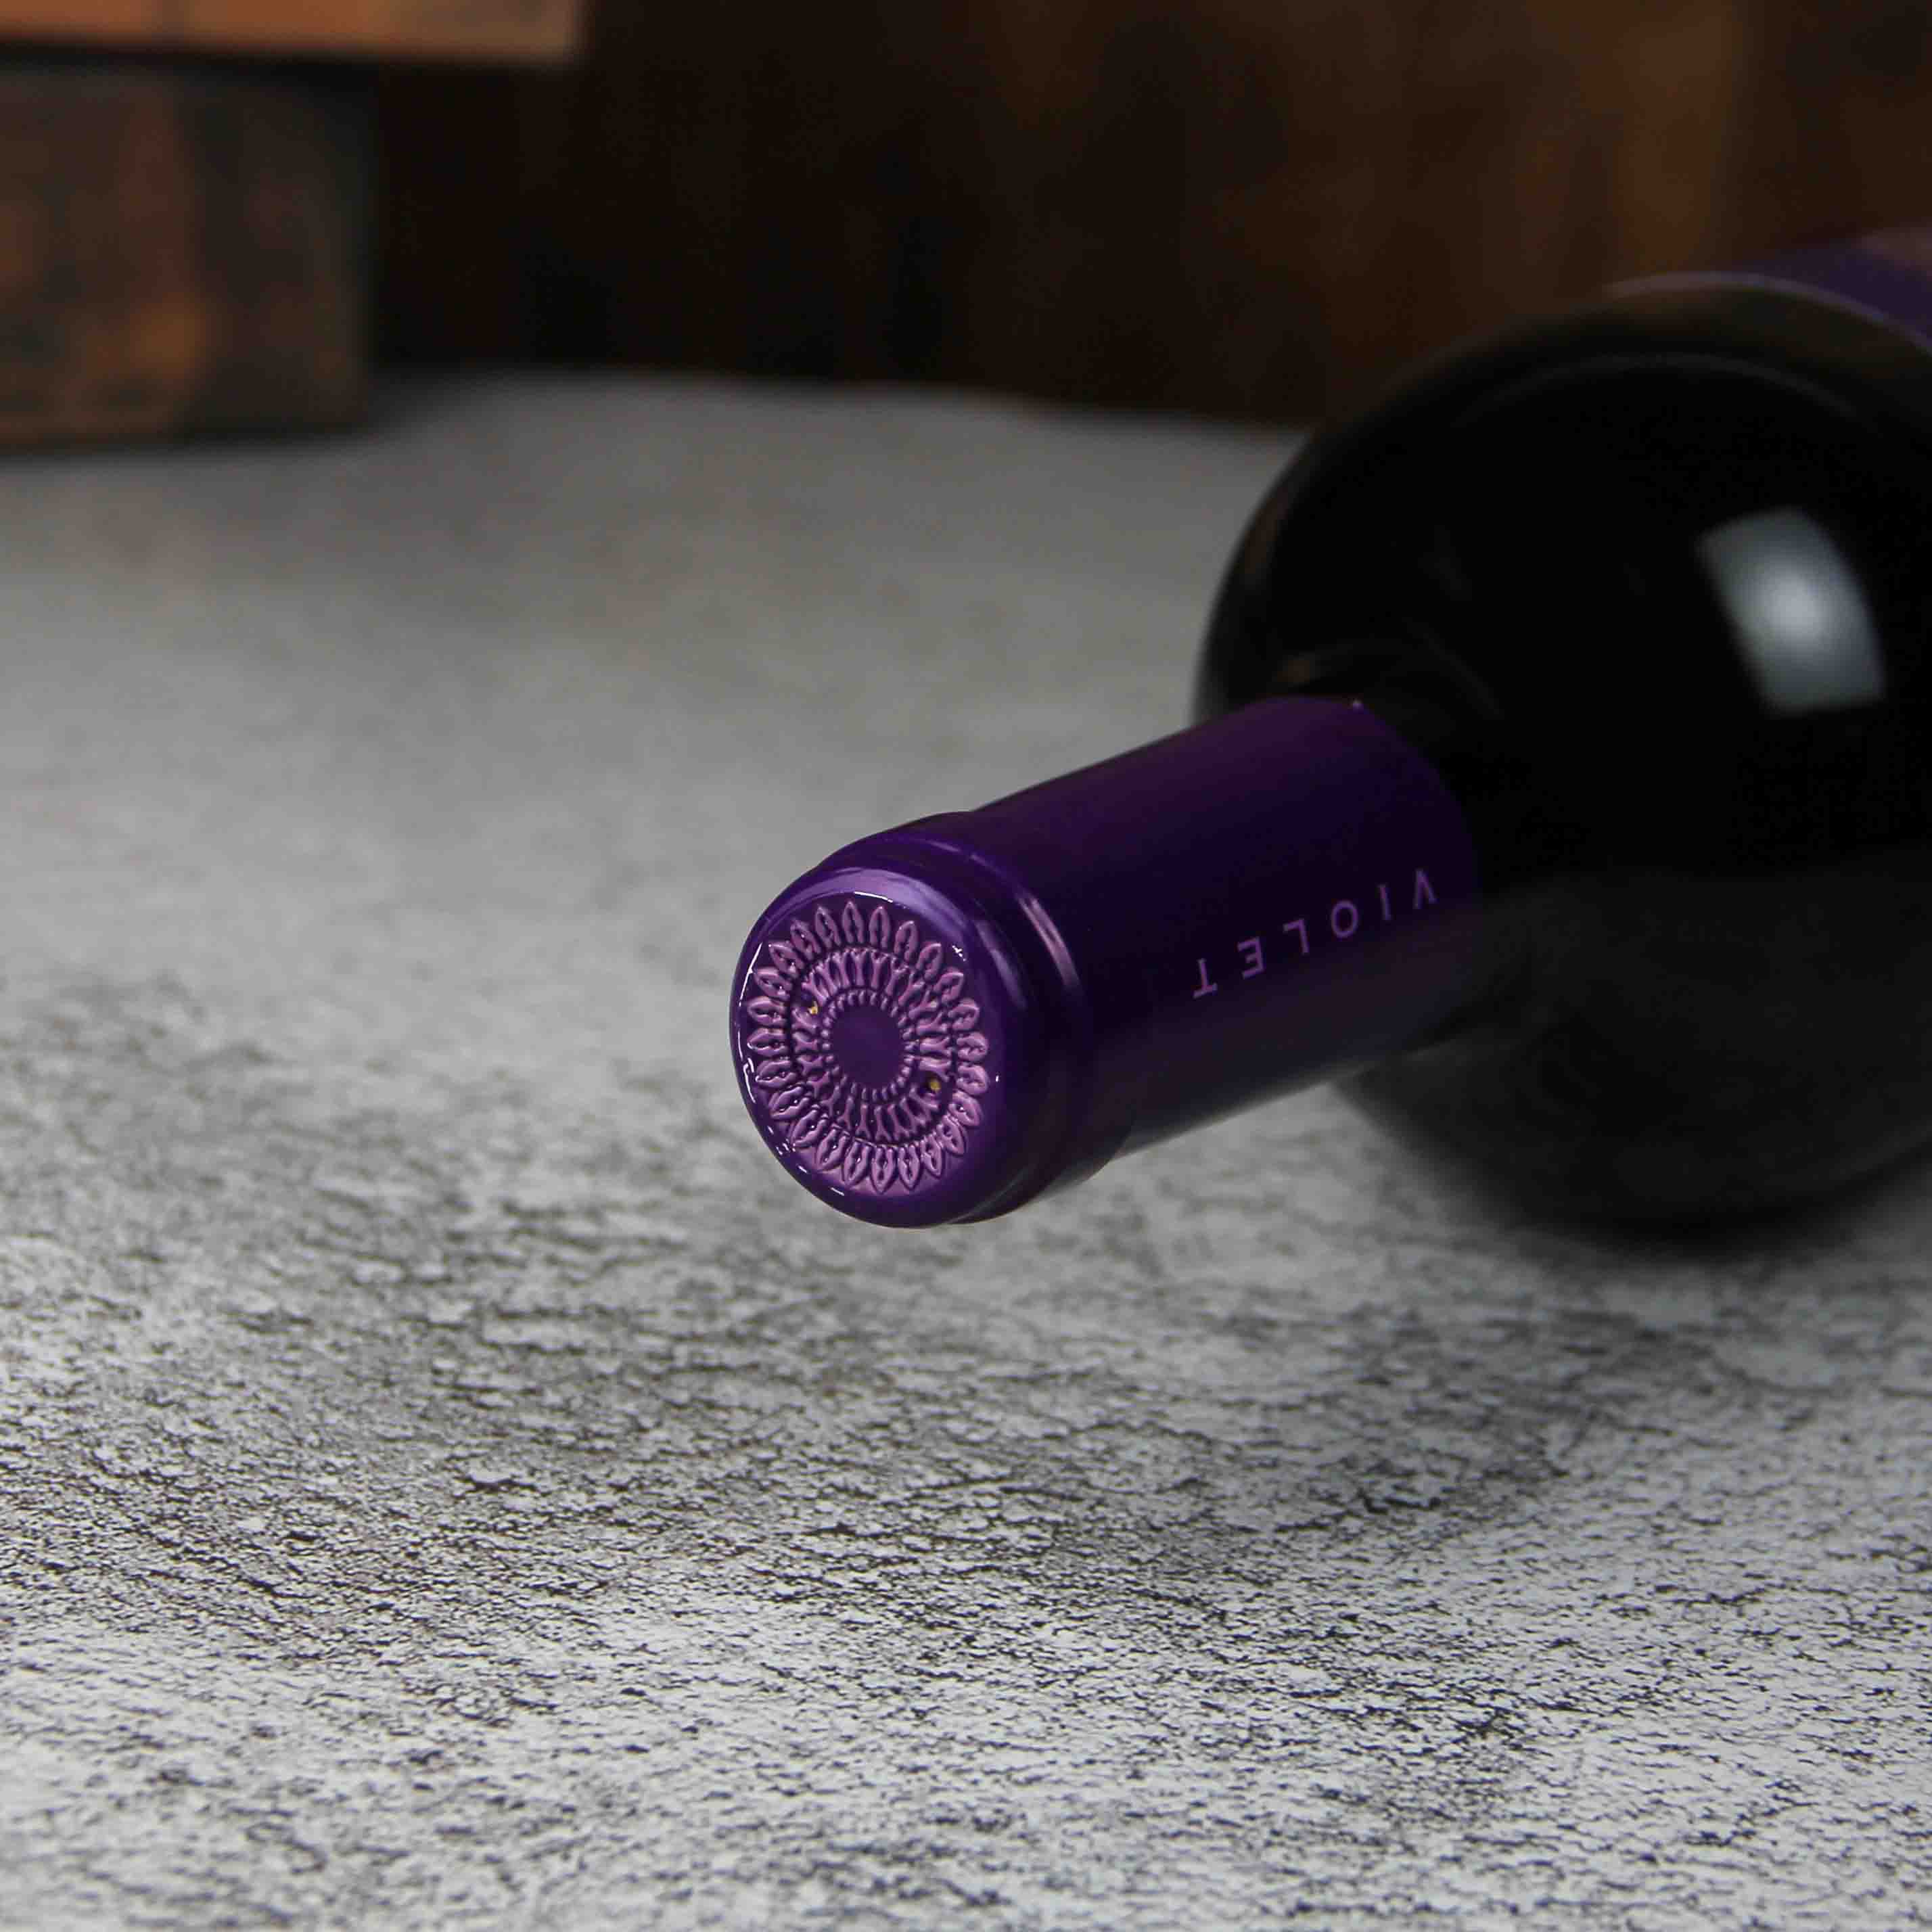 西班牙紫水晶®红葡萄酒